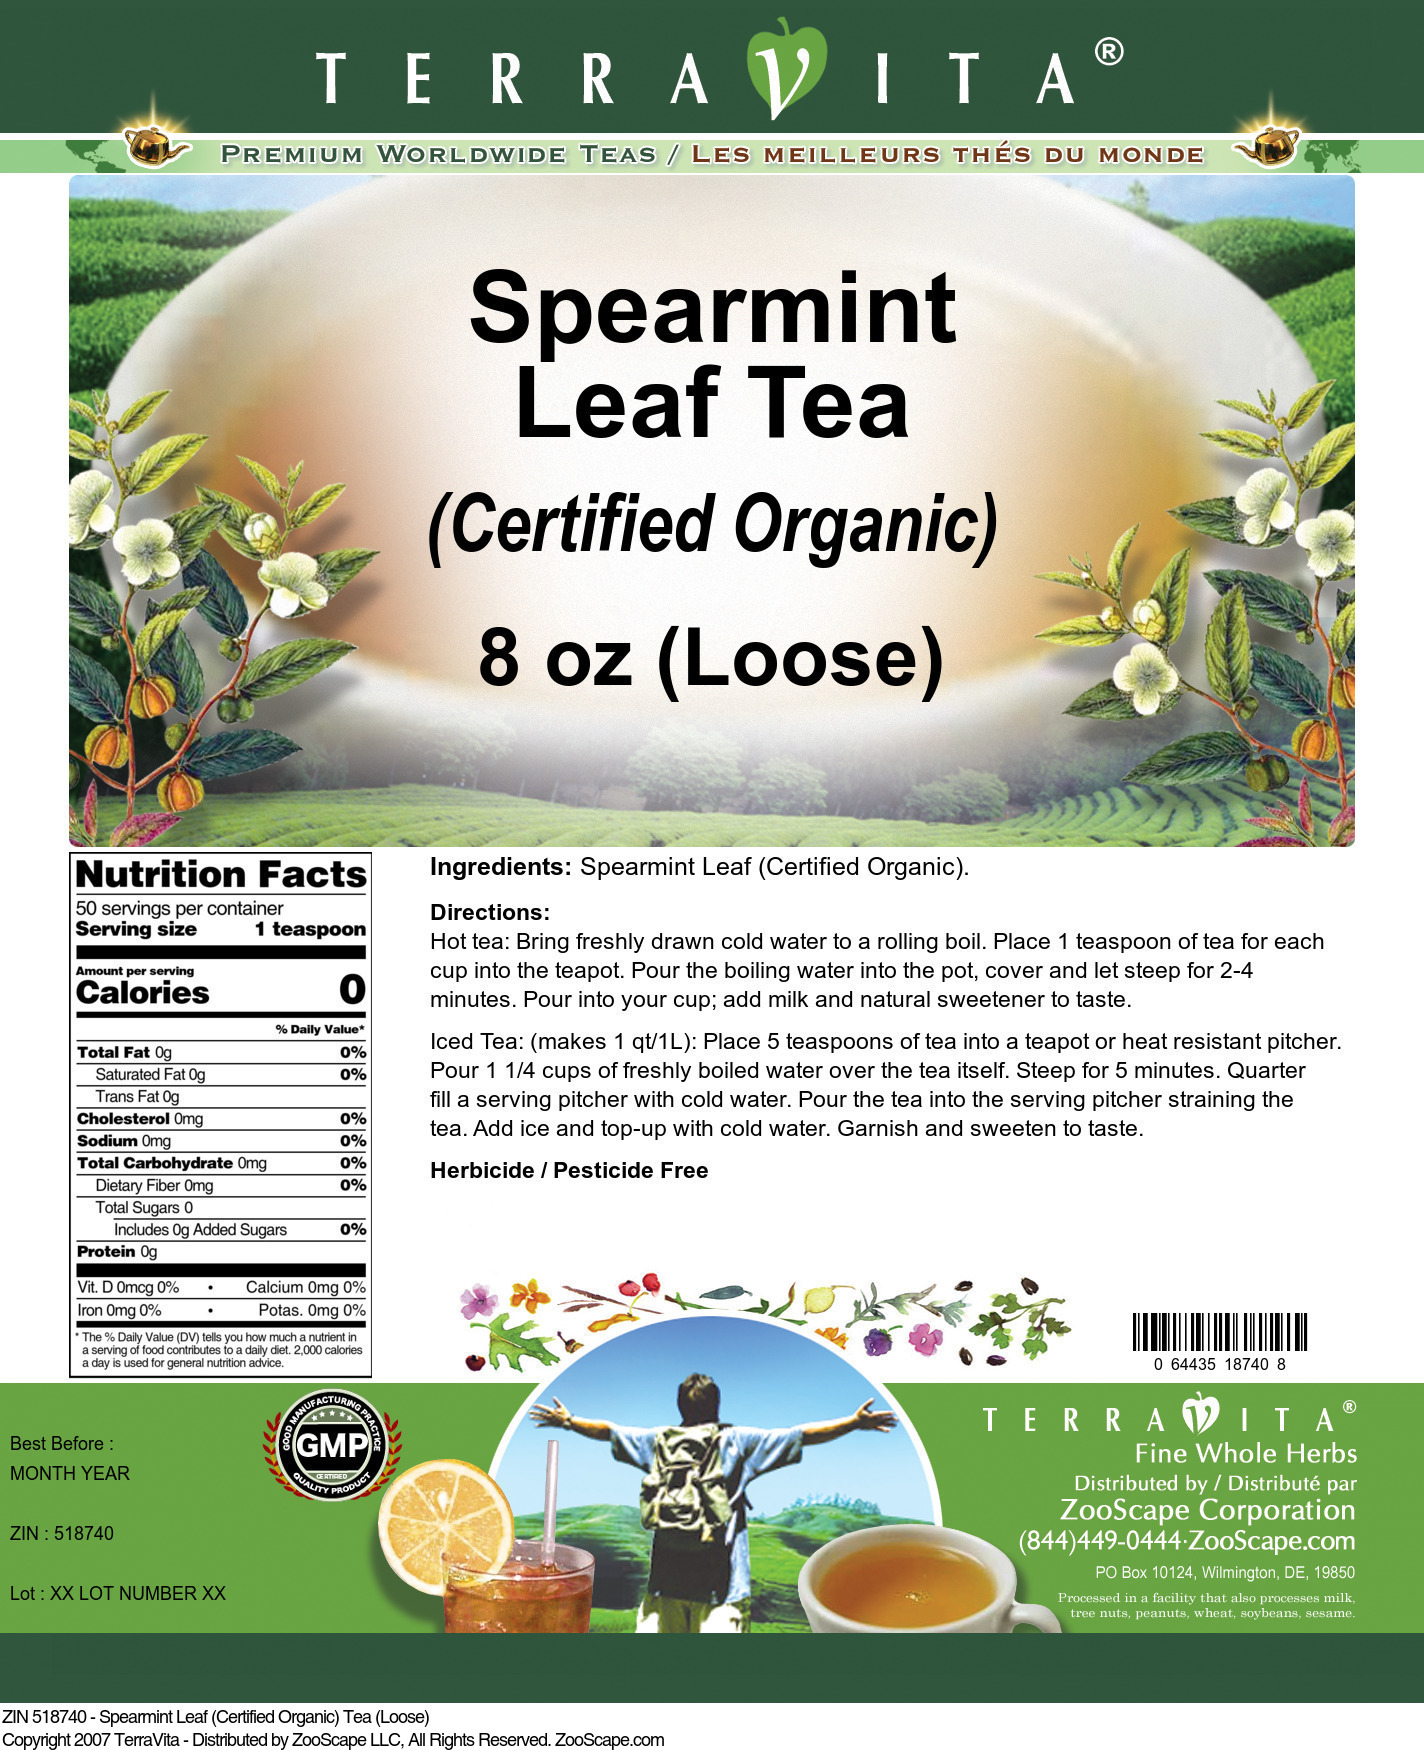 Spearmint Leaf (Certified Organic) Tea (Loose) - Label